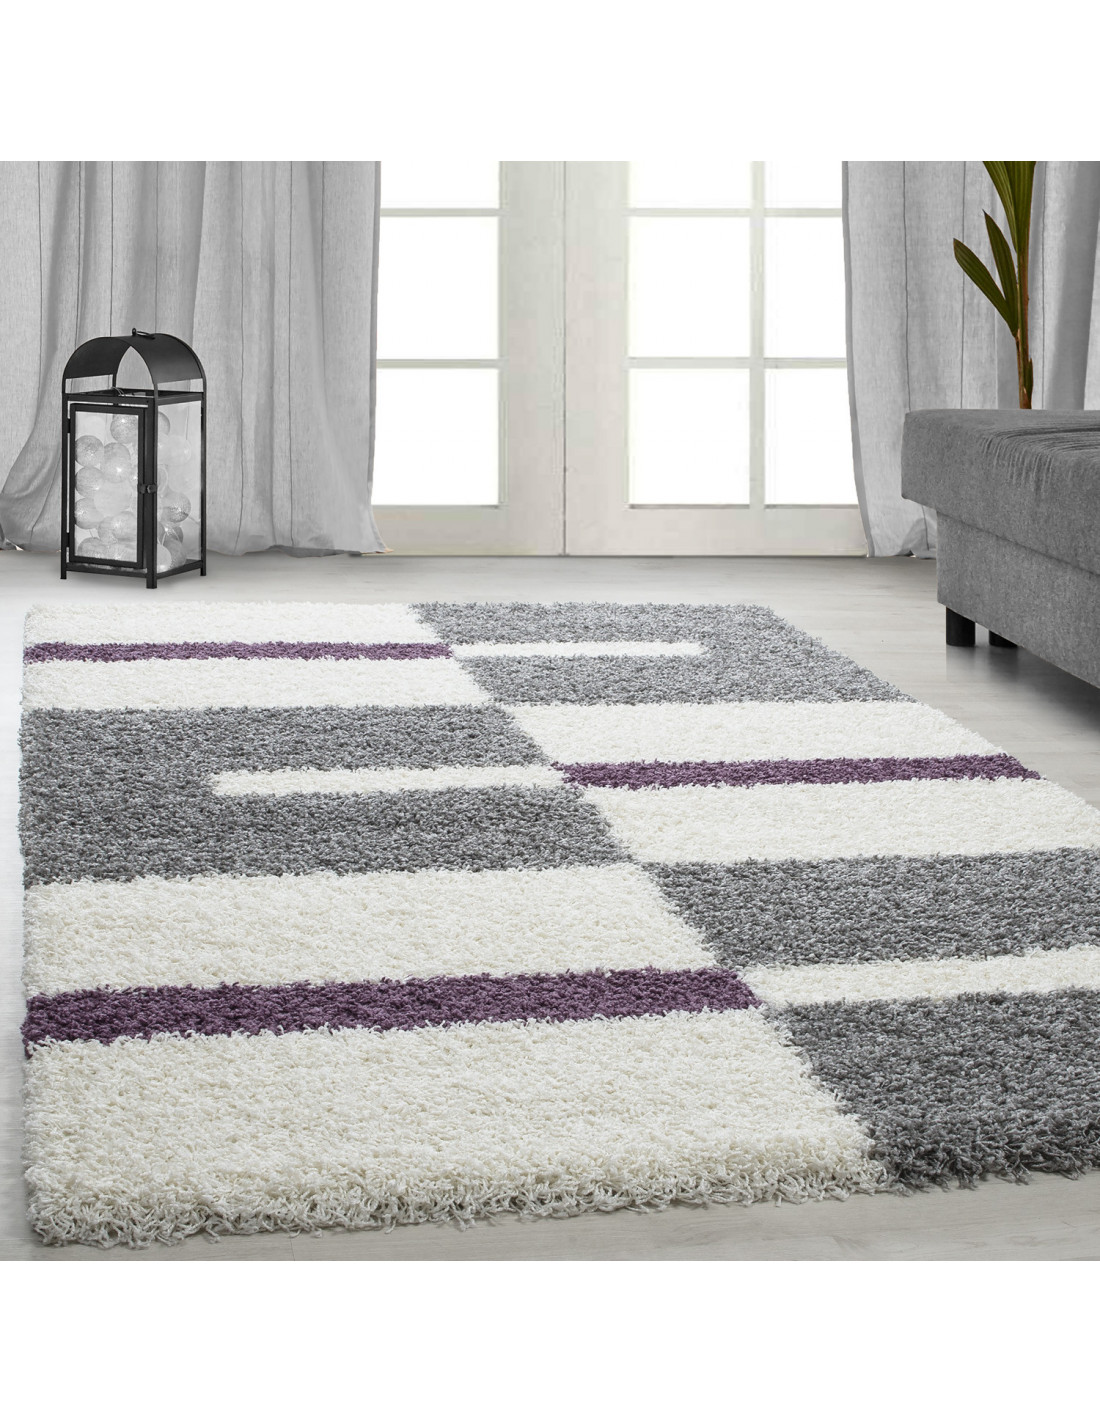 Hoogpolig tapijt, poolhoogte 3 cm, grijs-wit-paars